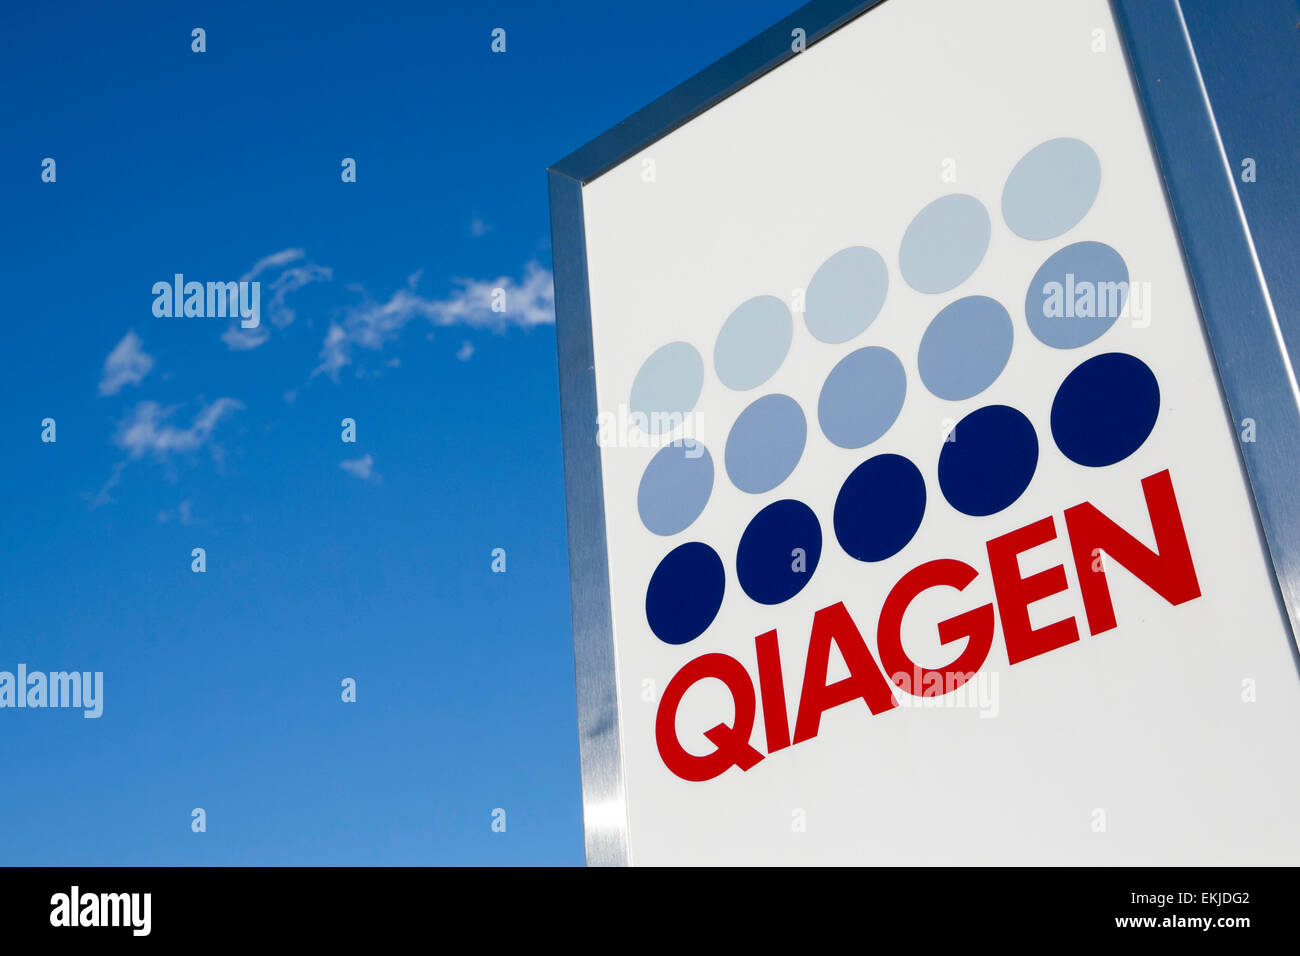 Ein Logo Zeichen außerhalb einer Einrichtung von Qiagen betrieben. Stockfoto